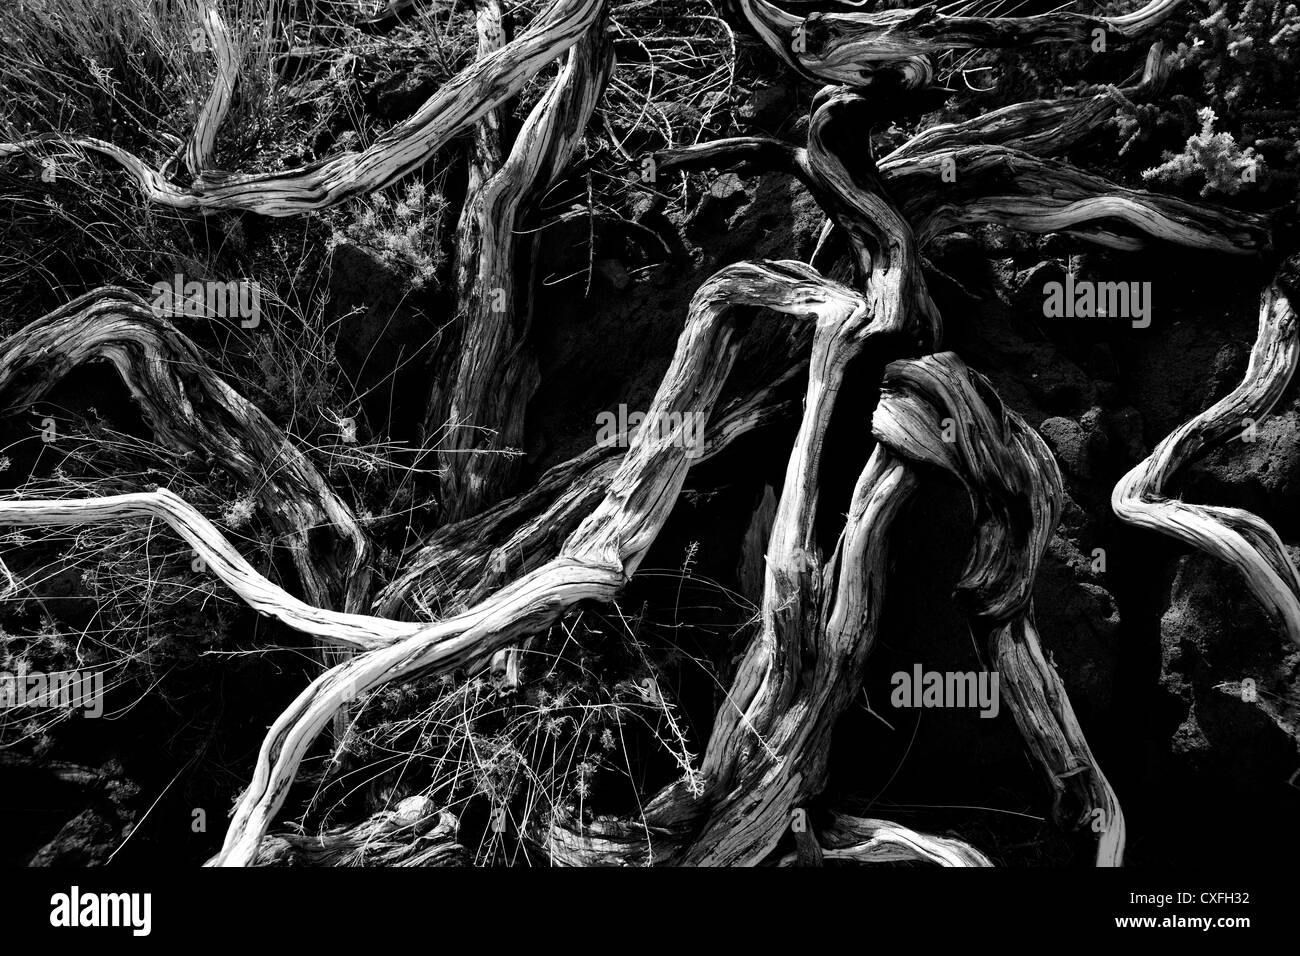 Dried branches over soil in La palma Caldera de Taburiente at Canary islands Stock Photo